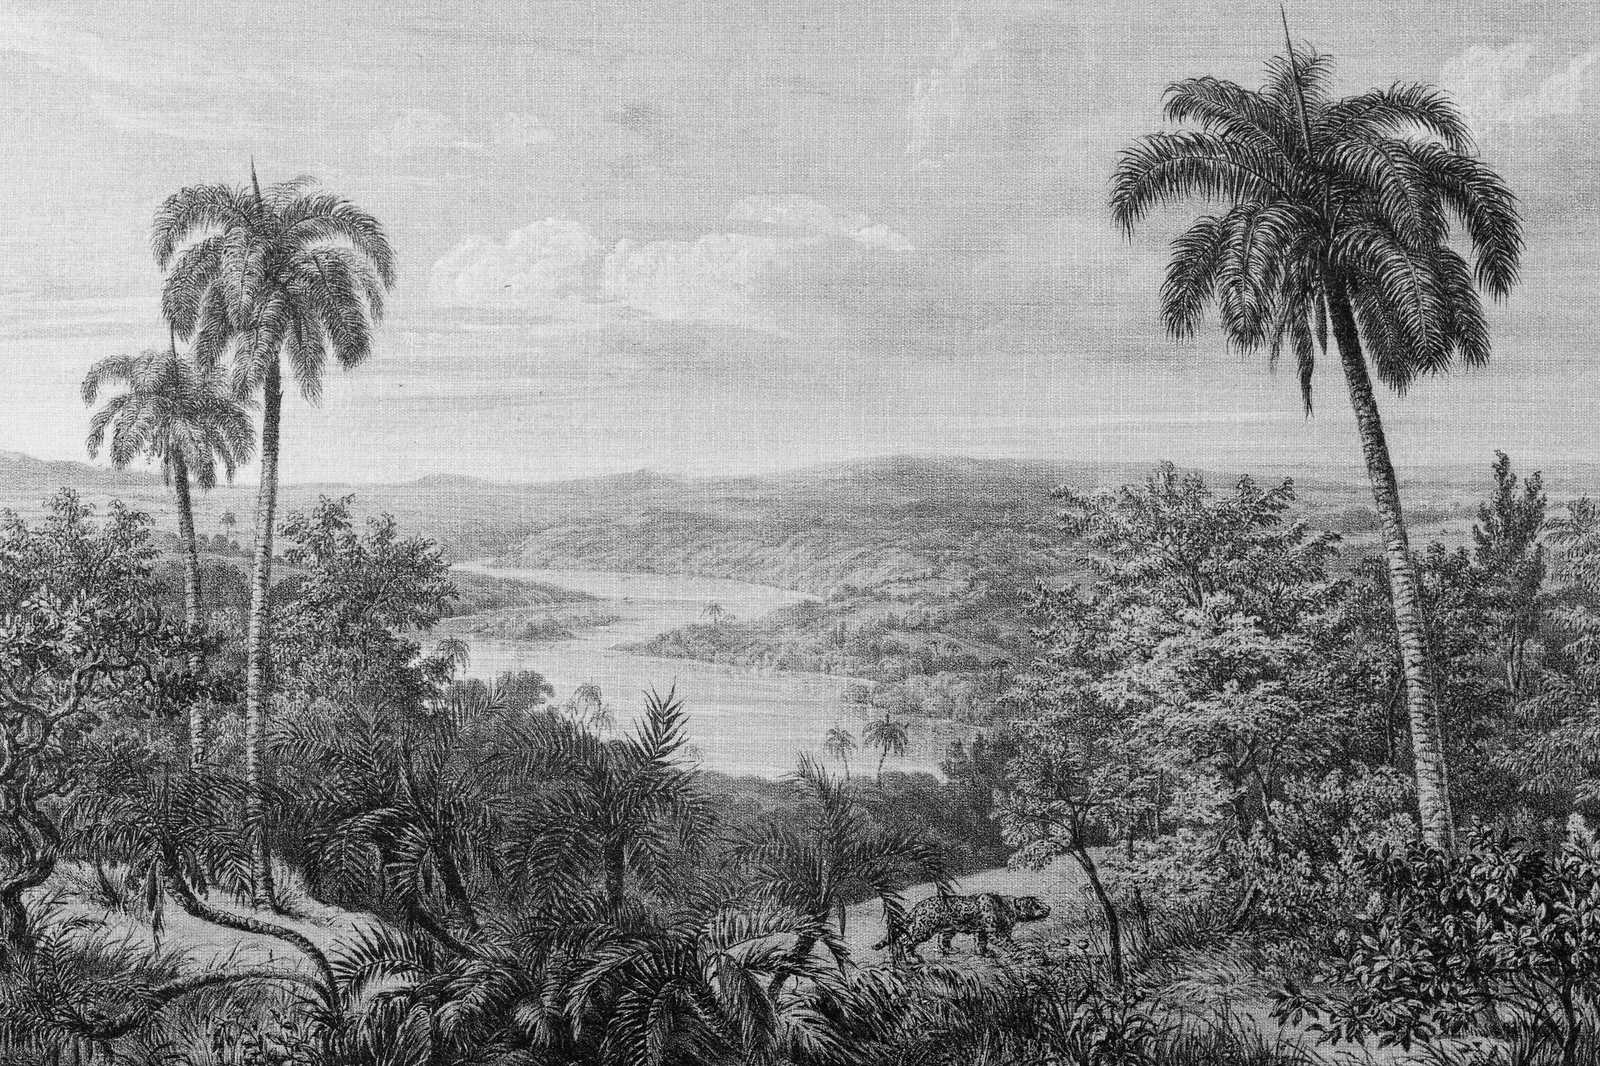             Tableau toile Vue sur la forêt tropicale avec optique de structure en lin - 0,90 m x 0,60 m
        